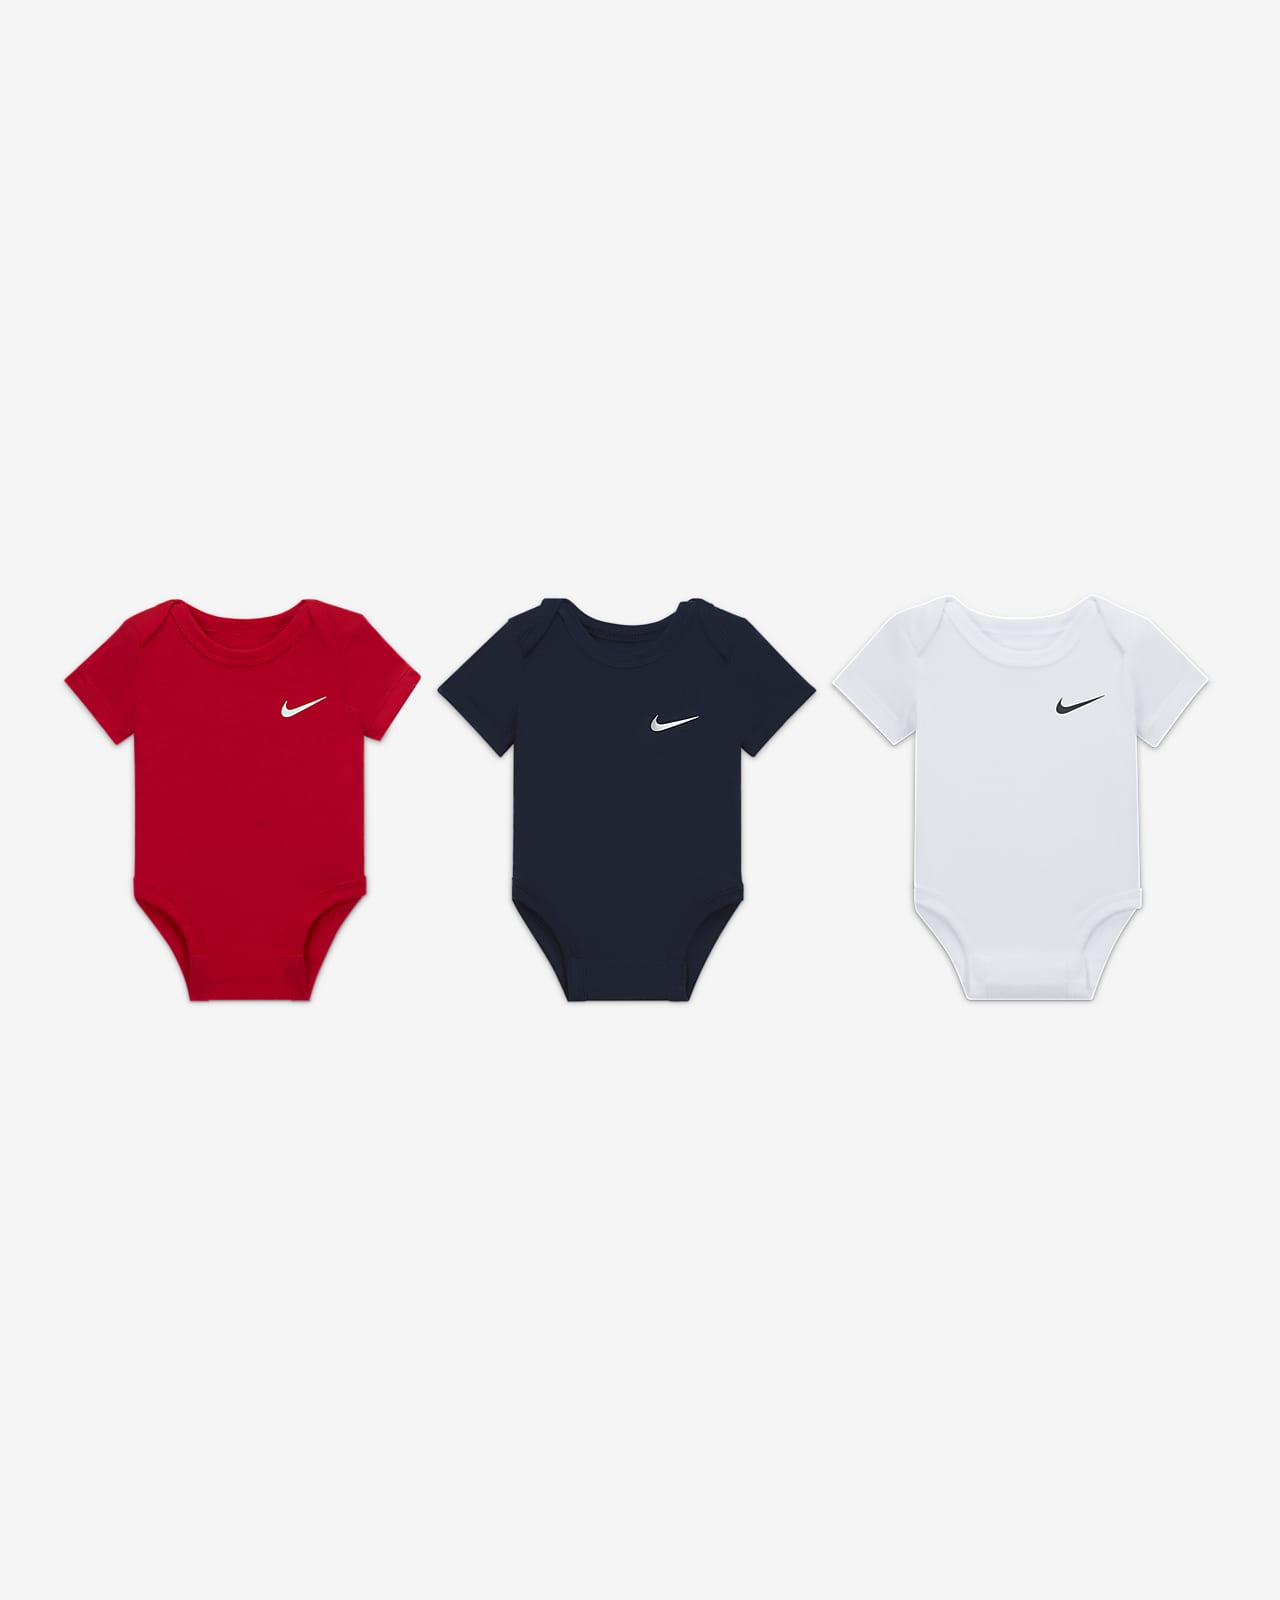 at tilføje Doven At afsløre Nike-body til babyer (3-6 M) med Swoosh (pakke med 3 stk.). Nike DK